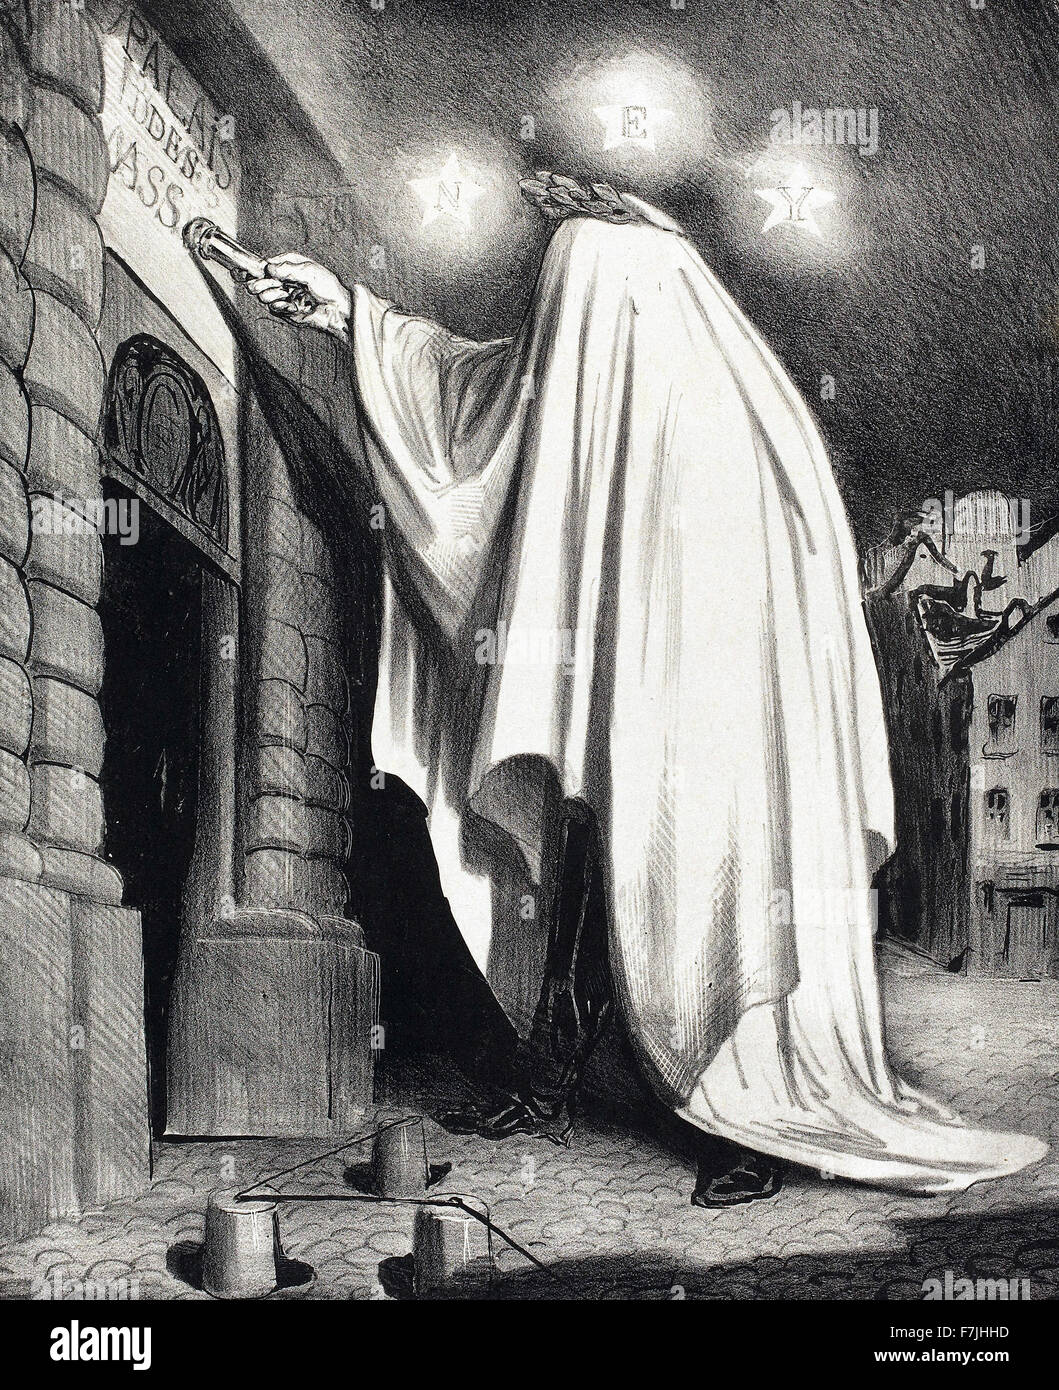 Honoré-Victorin Daumier - Le Fantome Stock Photo